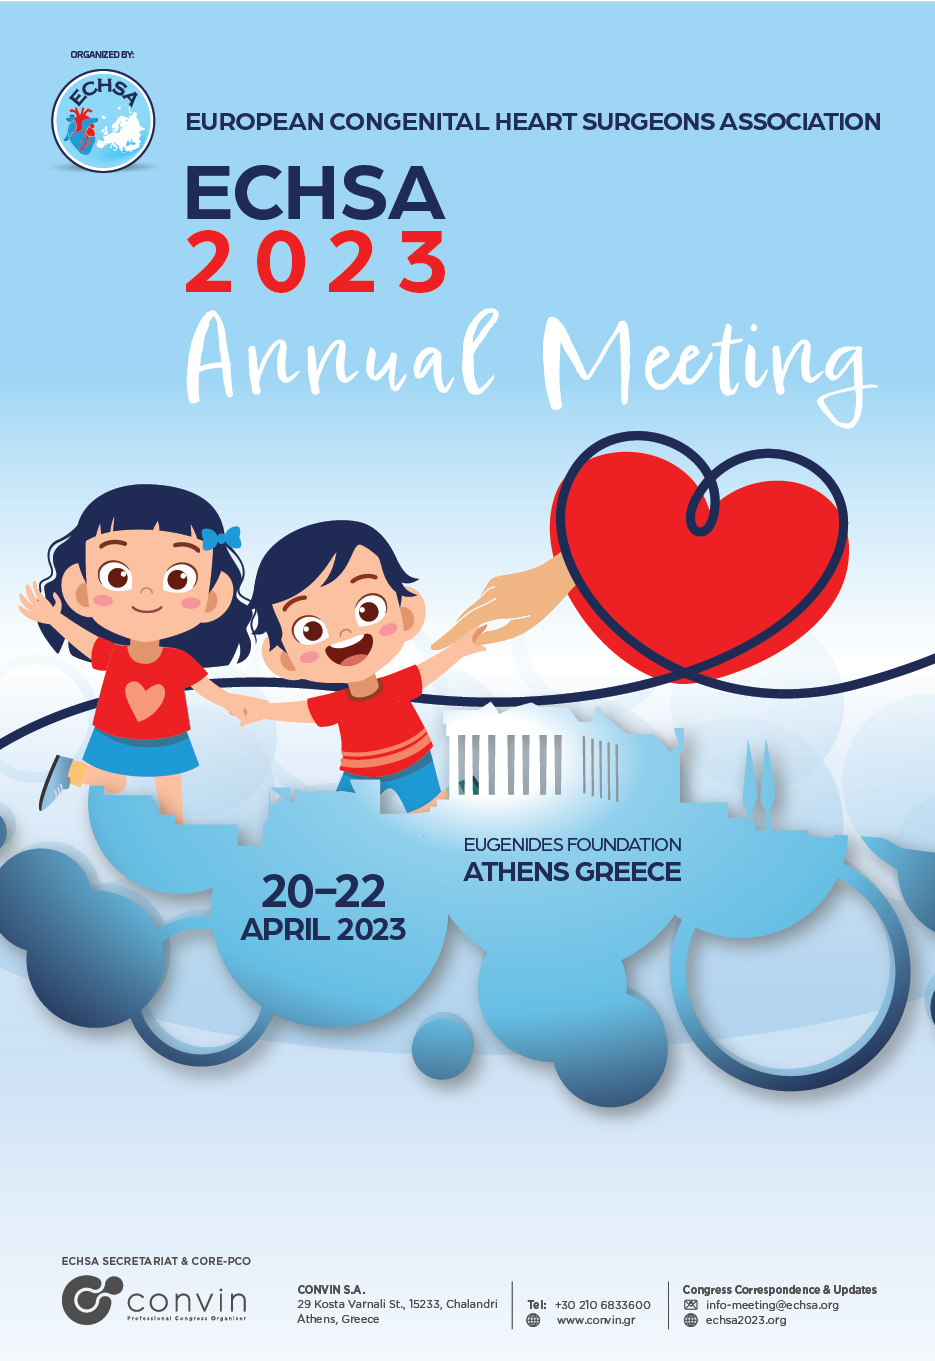 ECHSA 2023 Annual Meeting